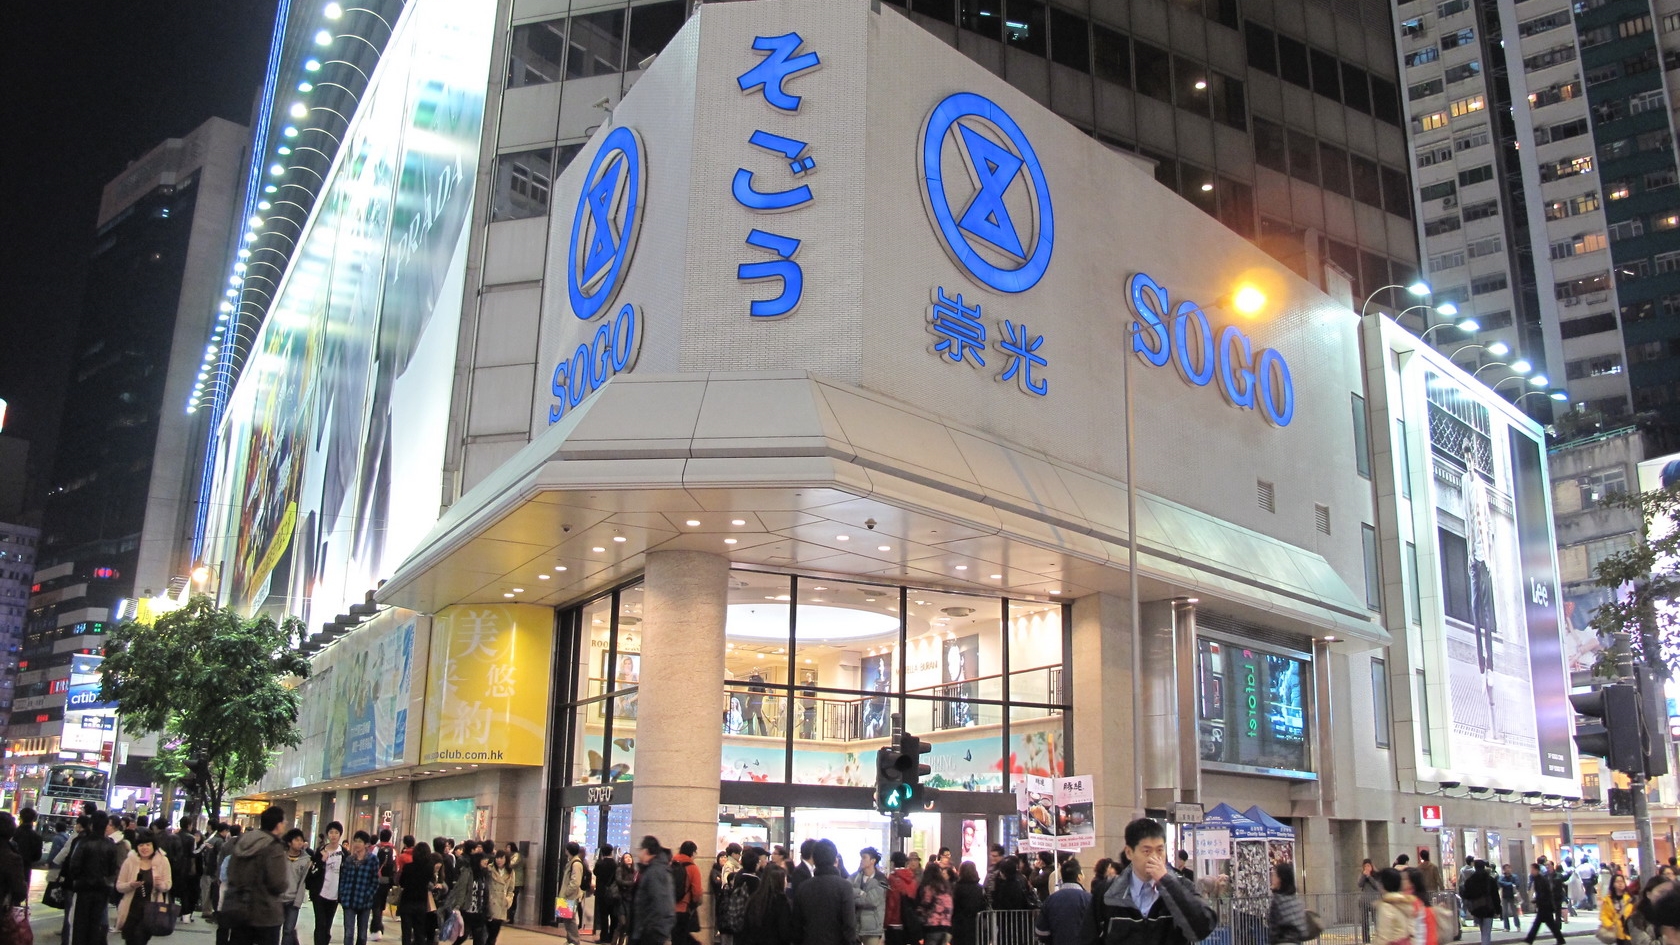 Luxstate - Real Estate - Retail - Hong Kong - Causeway Bay - SOGO 銅鑼灣崇光百貨 (1).jpg